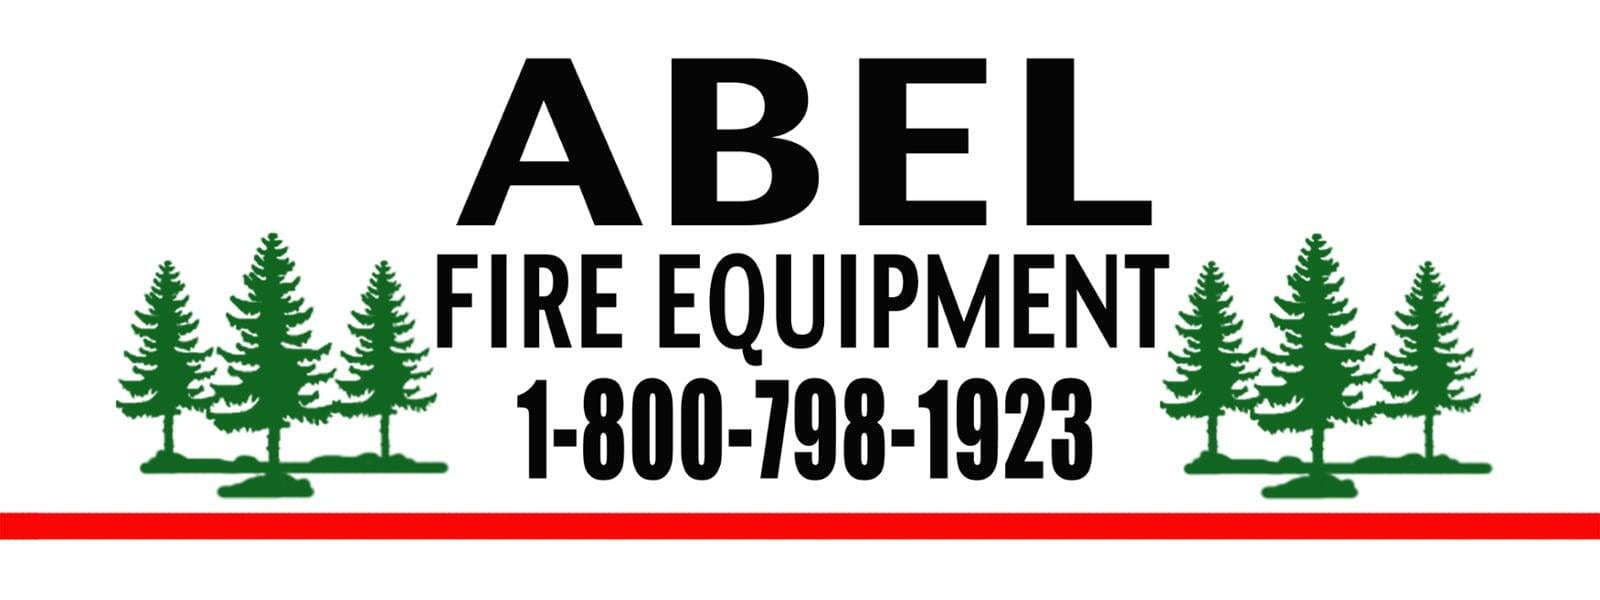 Abel Fire Equipment 